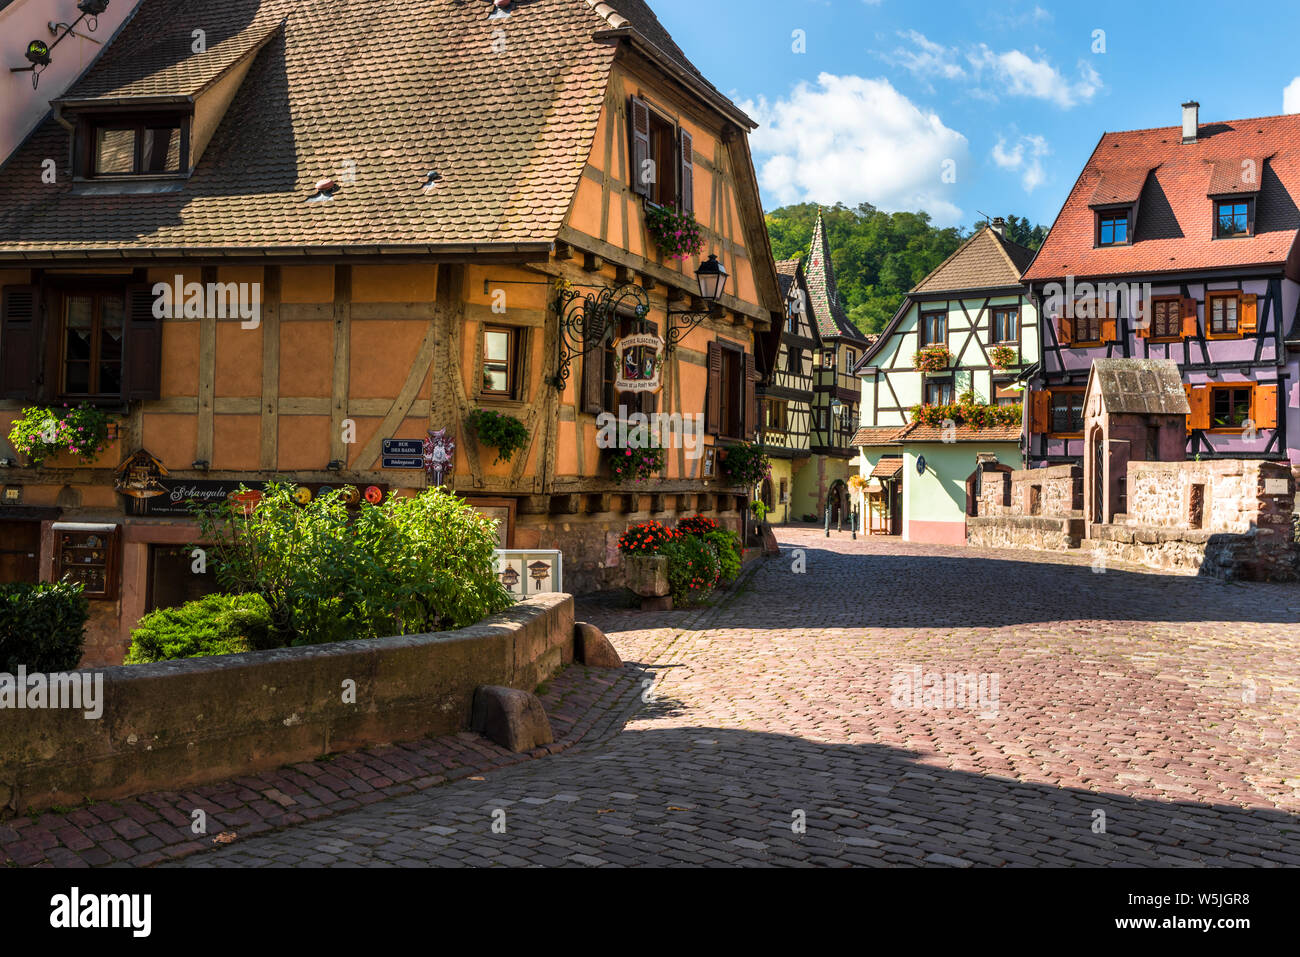 Pintoresco conjunto en la aldea Kaysersberg, La Ruta del Vino de Alsacia, Francia, plaza con casas con entramados de madera y puente de piedra Foto de stock